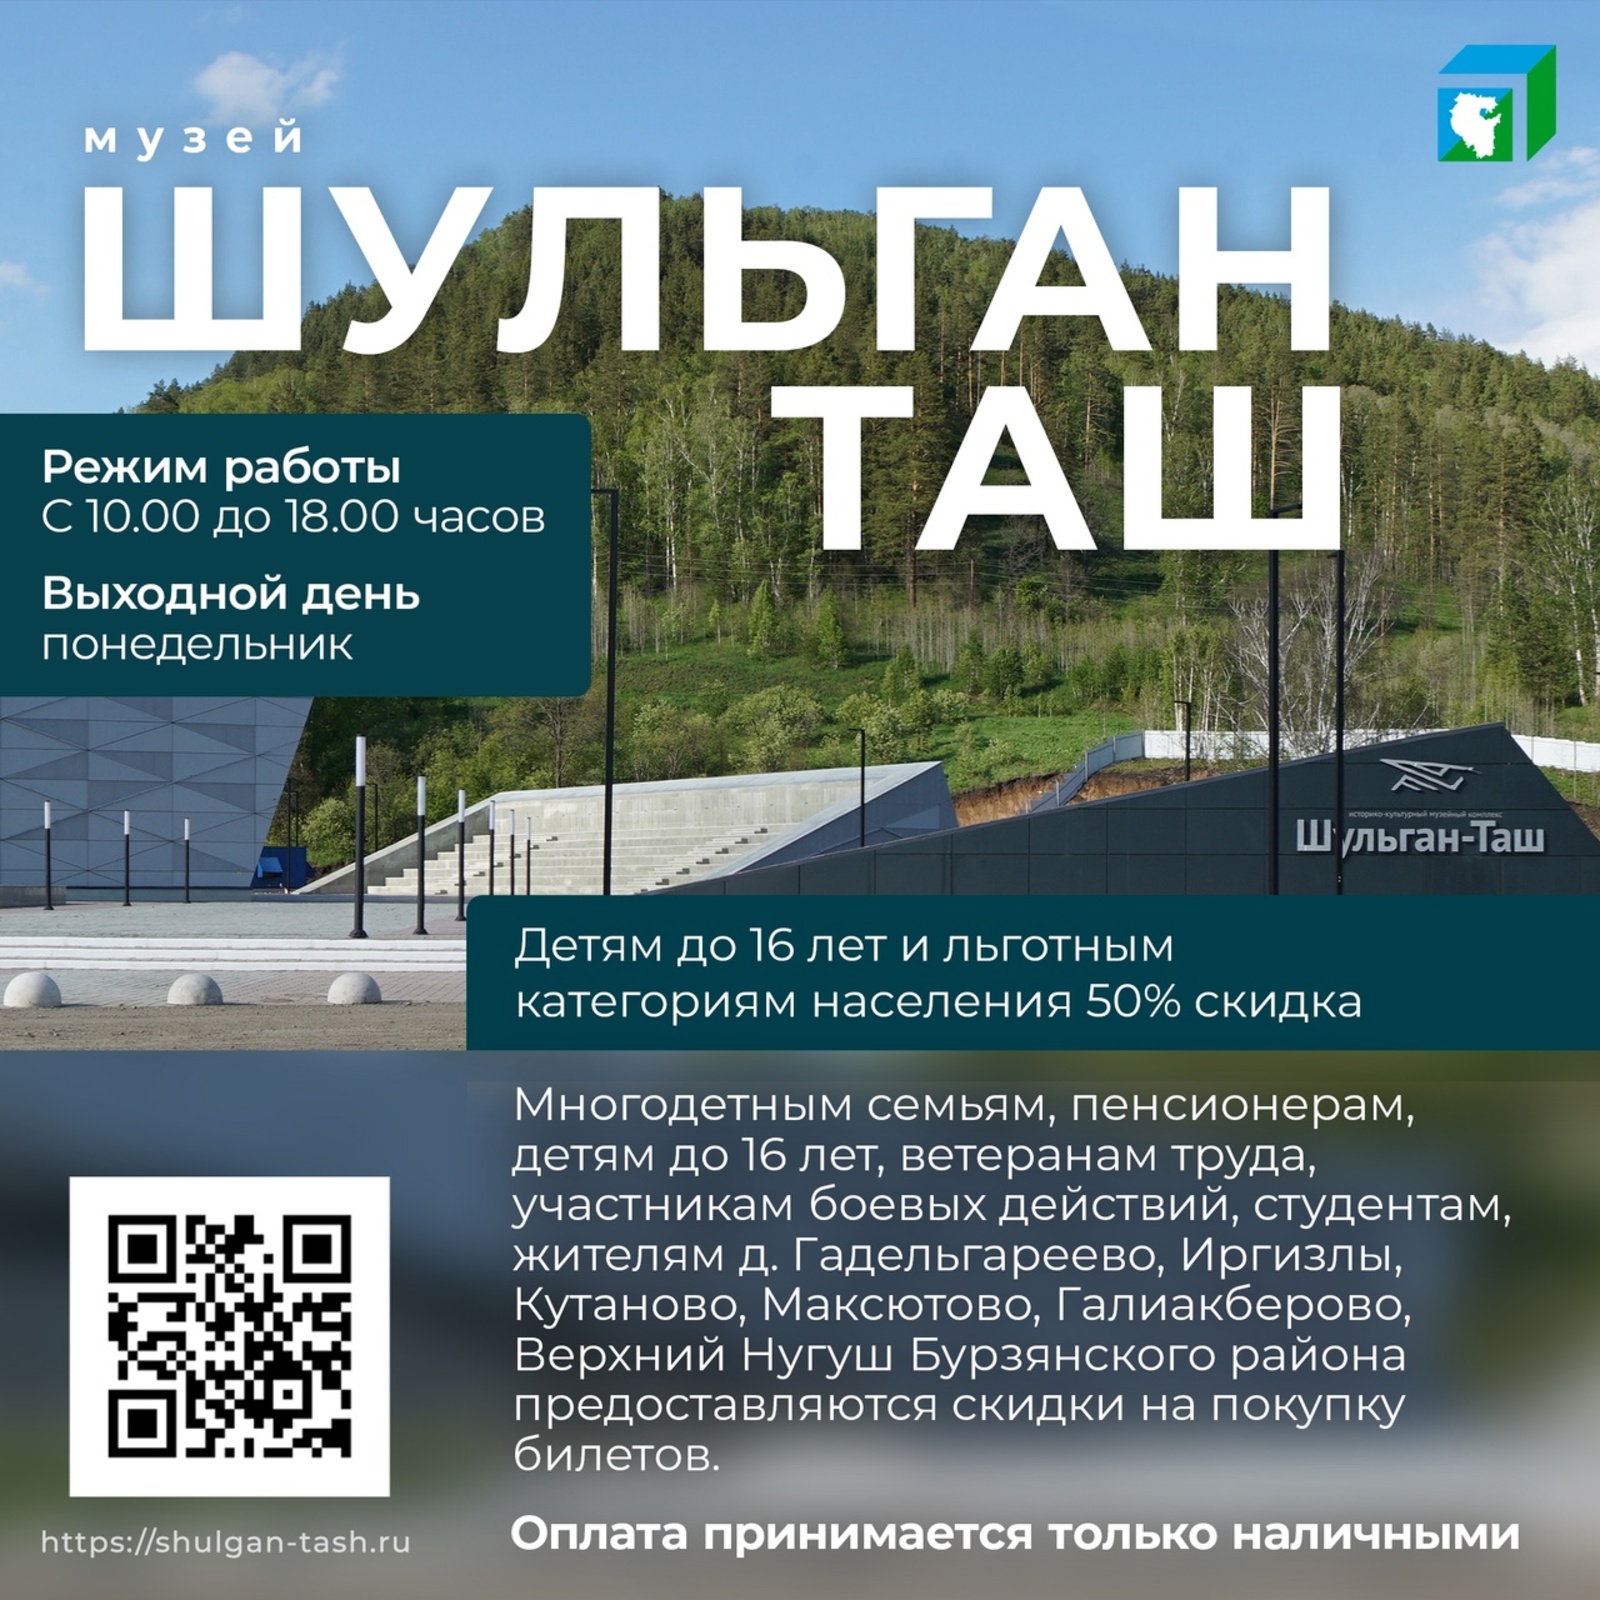 Центр управления Республикой Башкортостан - о музейном комплексе «Шульган-Таш»